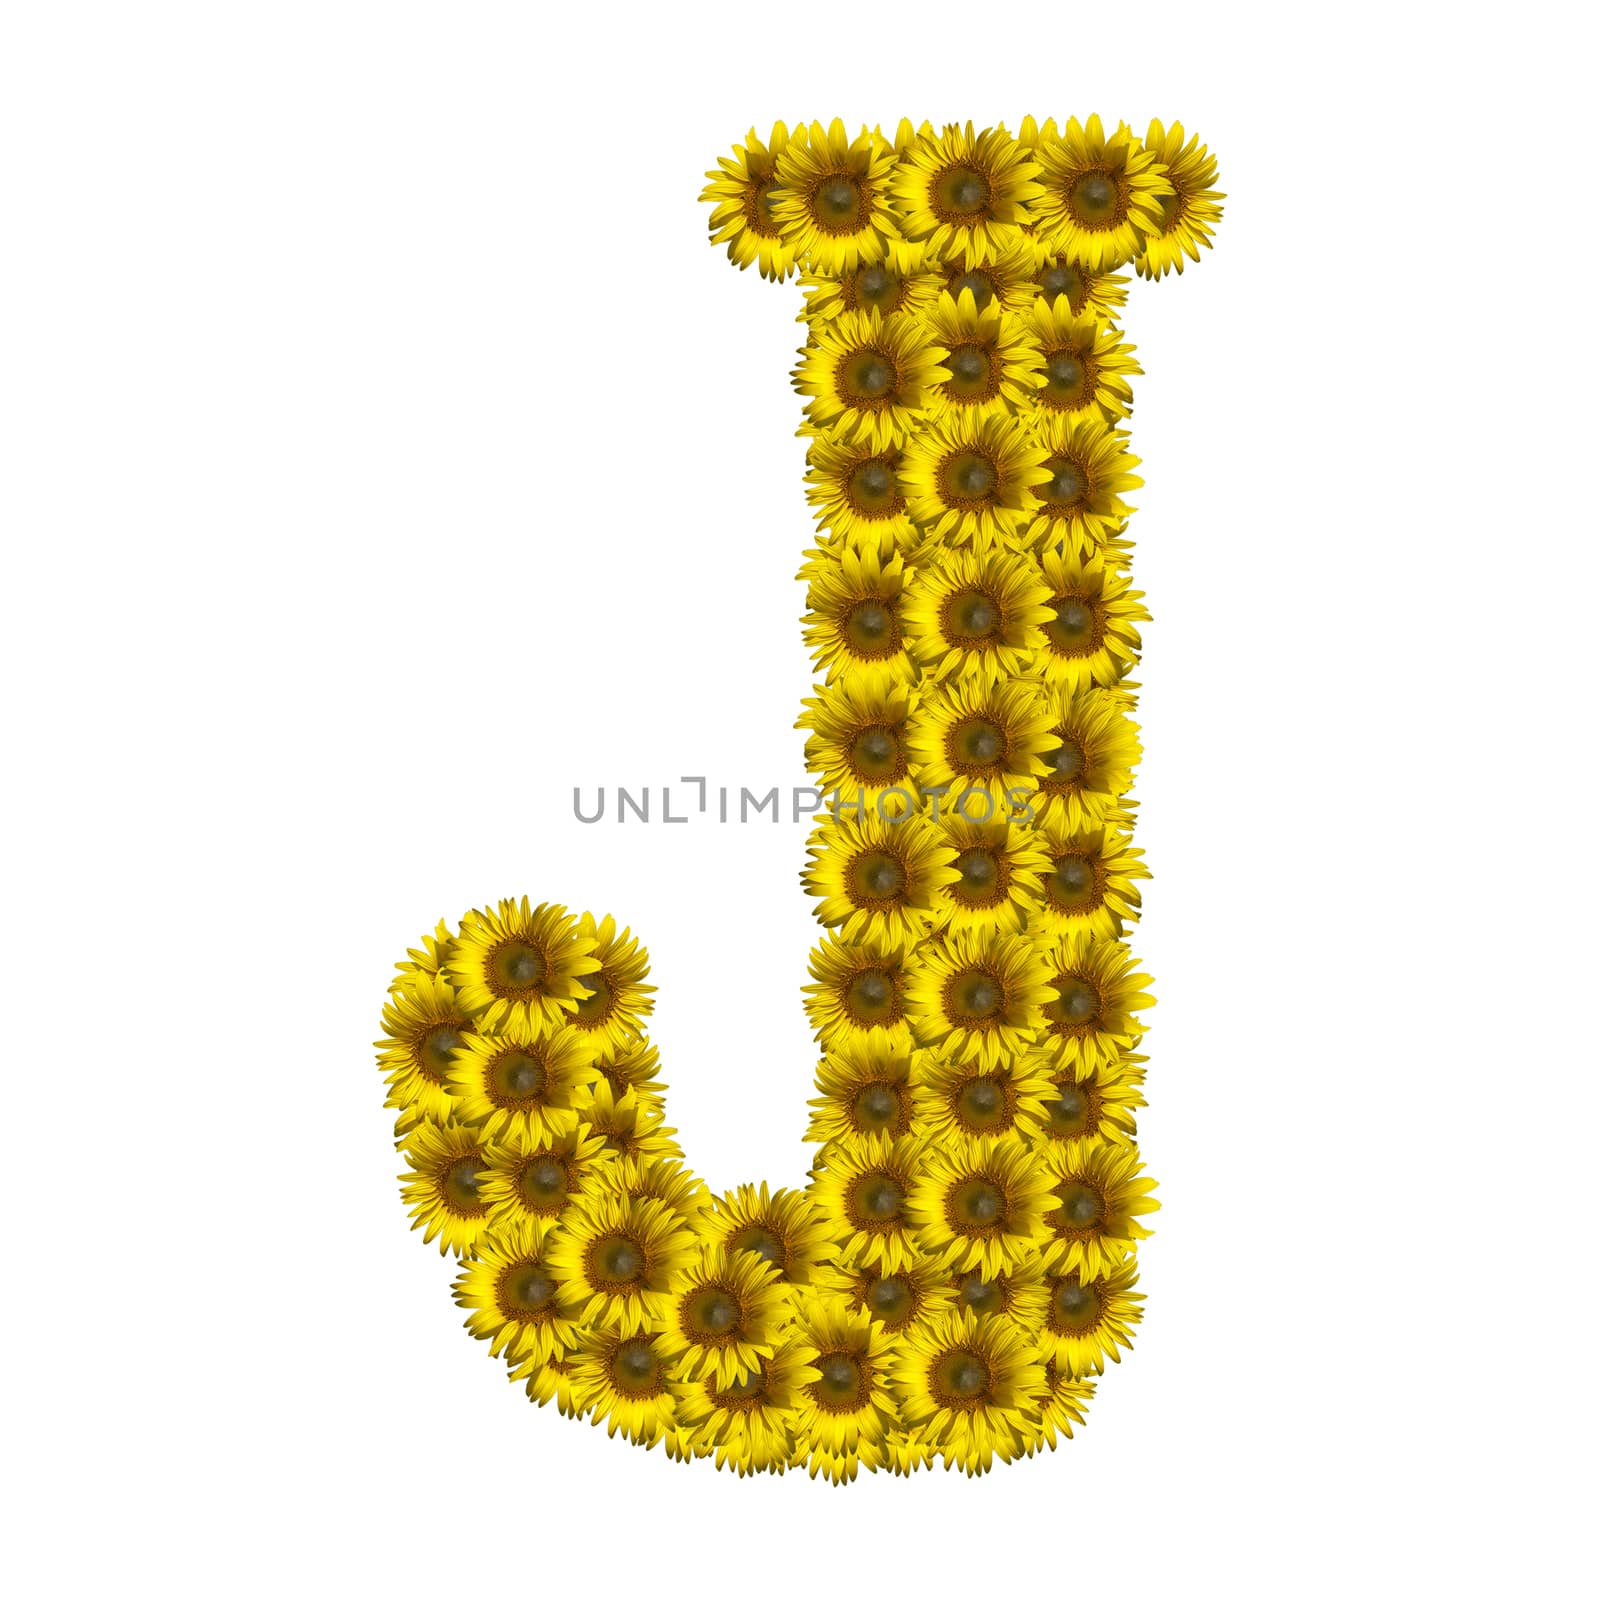 Sunflower alphabet isolated on white background, letter J